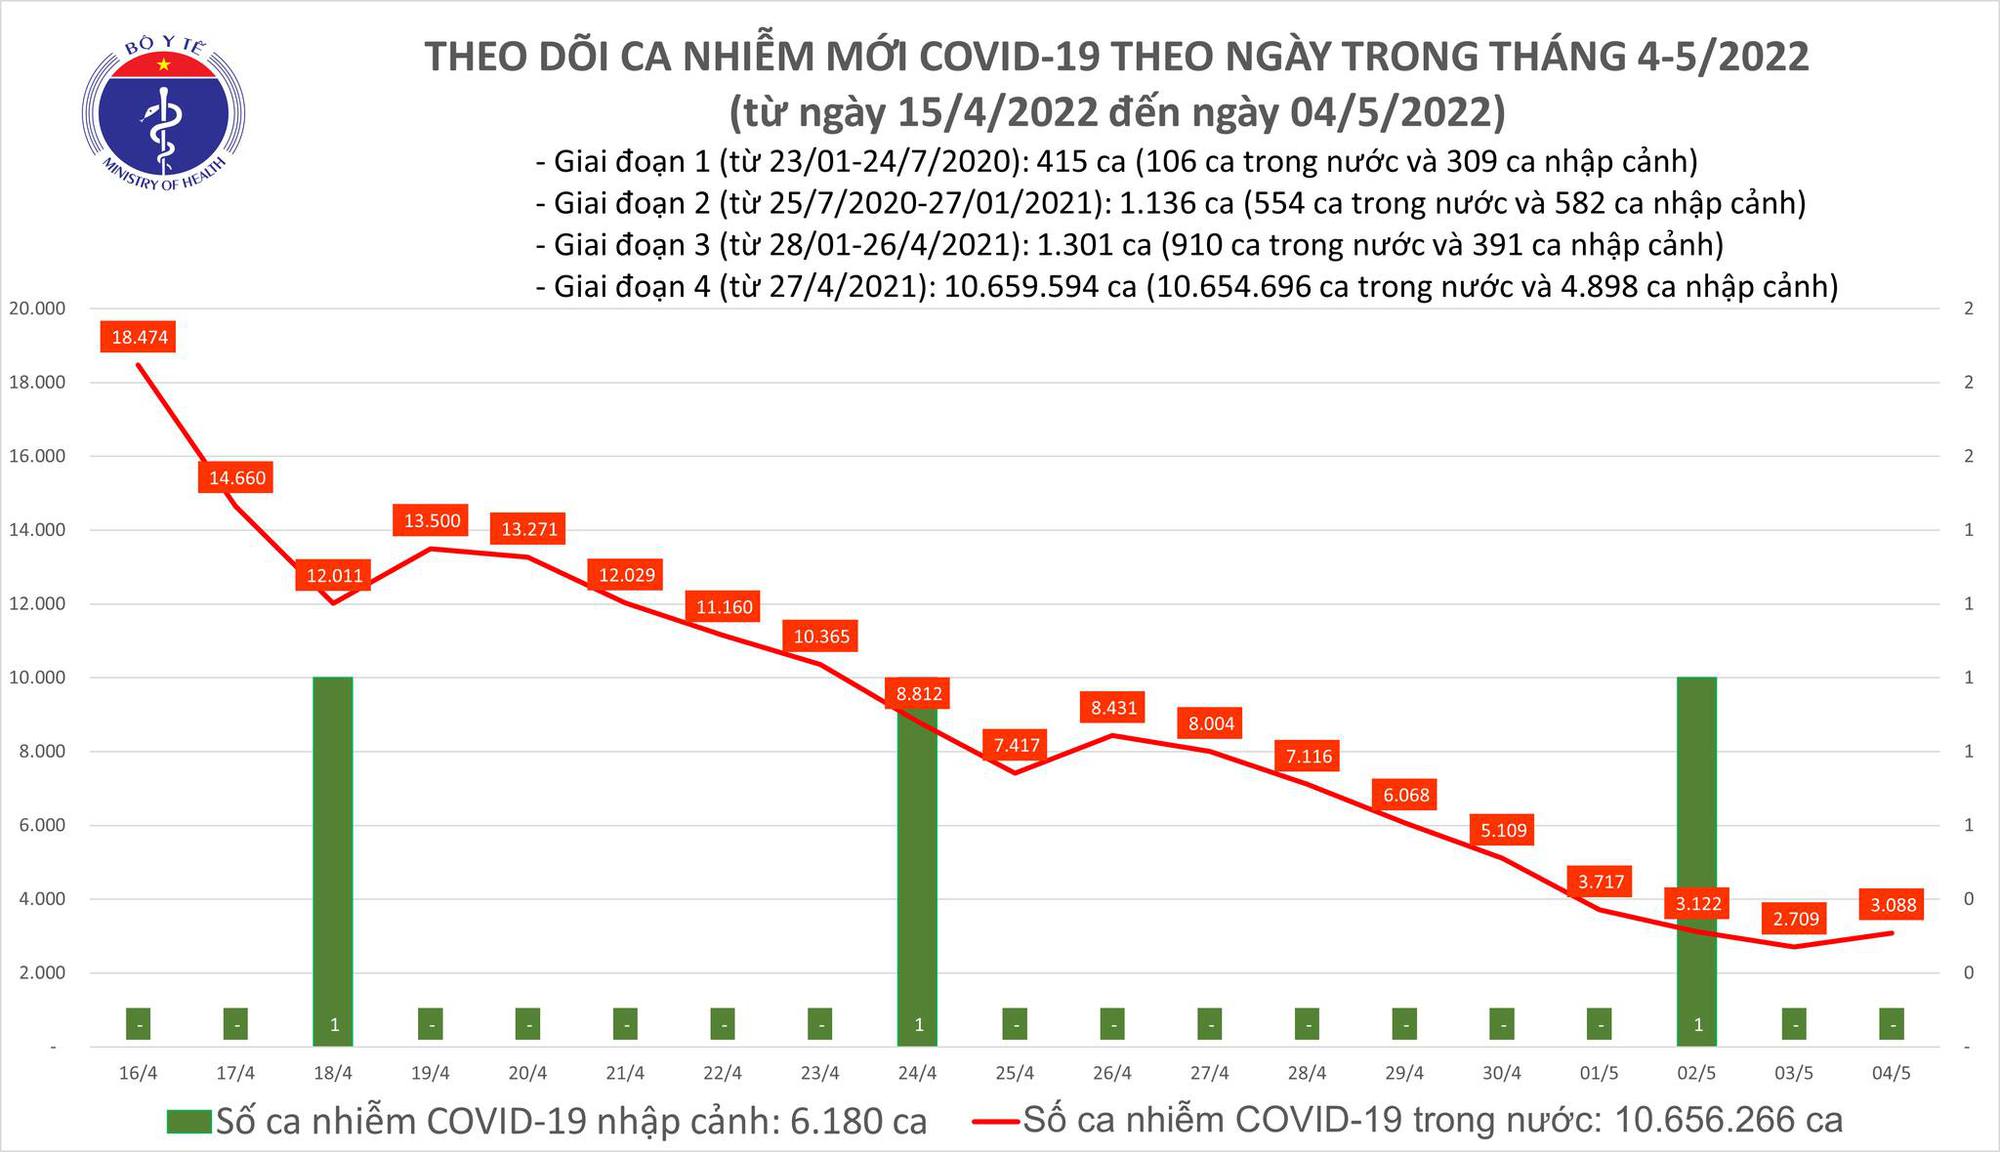 Ngày 4/5: Có 3.088 ca COVID-19, số khỏi bệnh gấp 14 lần F0 mắc mới - Ảnh 1.